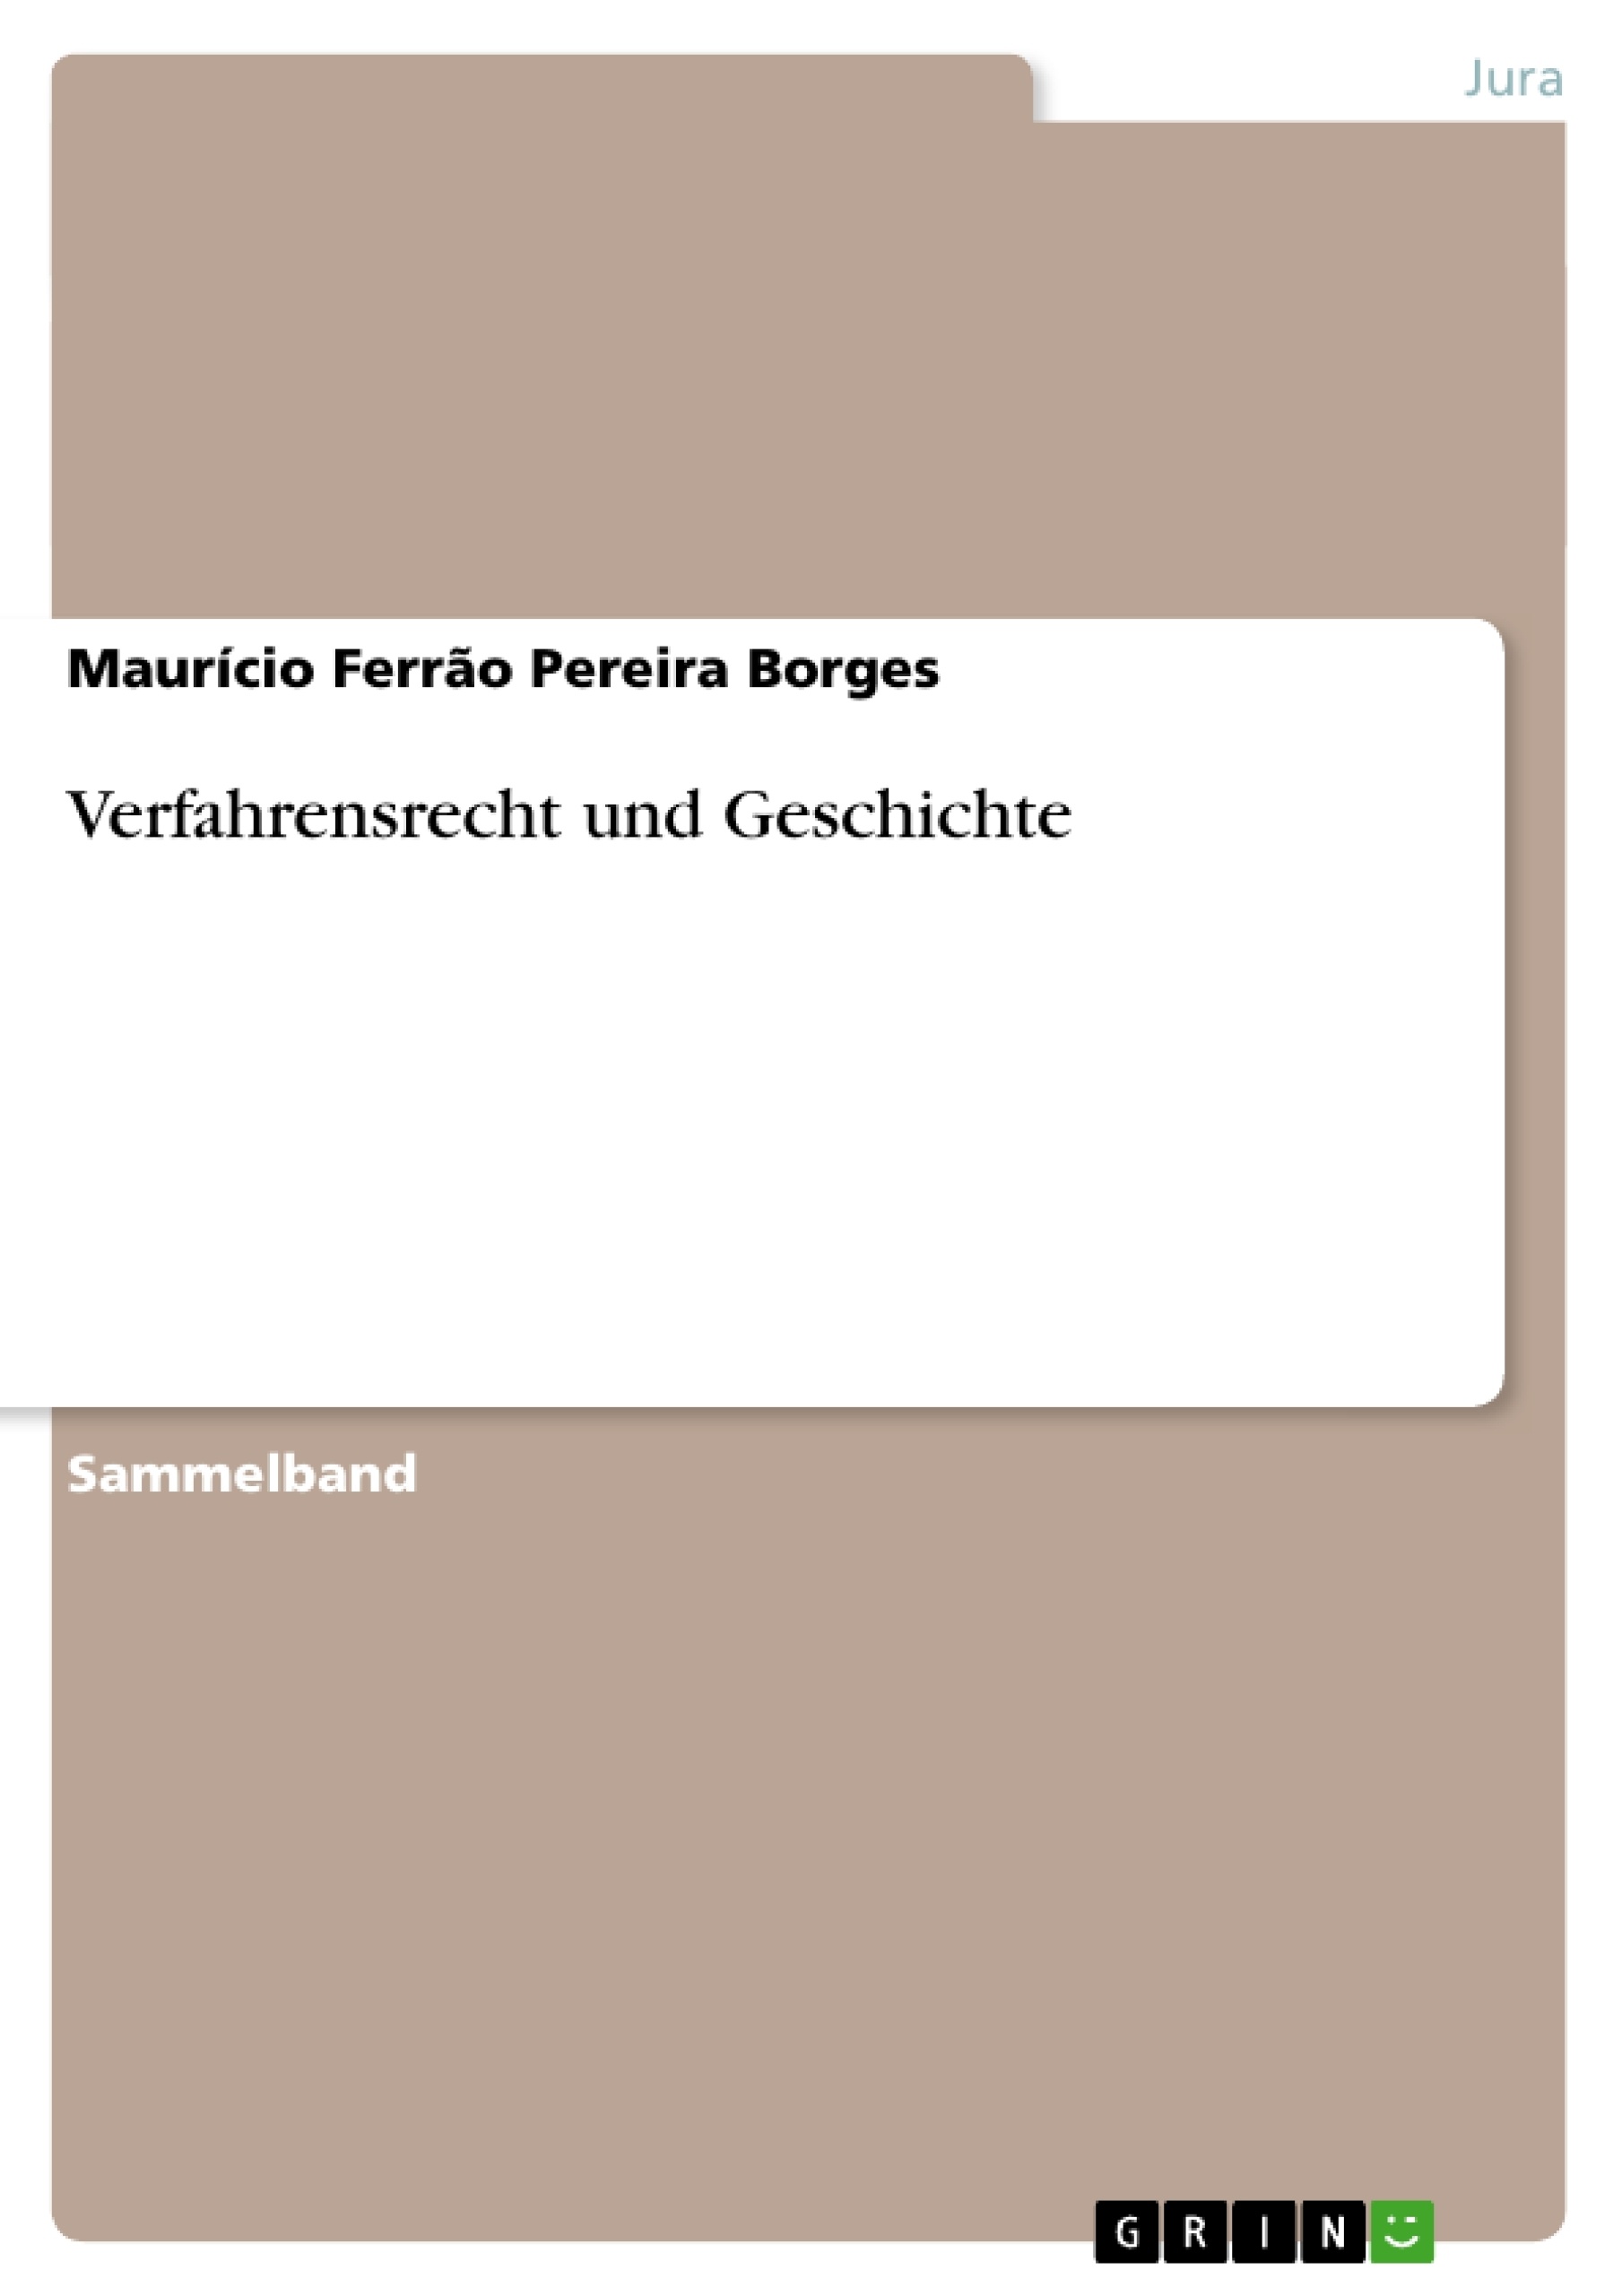 Título: Verfahrensrecht und Geschichte